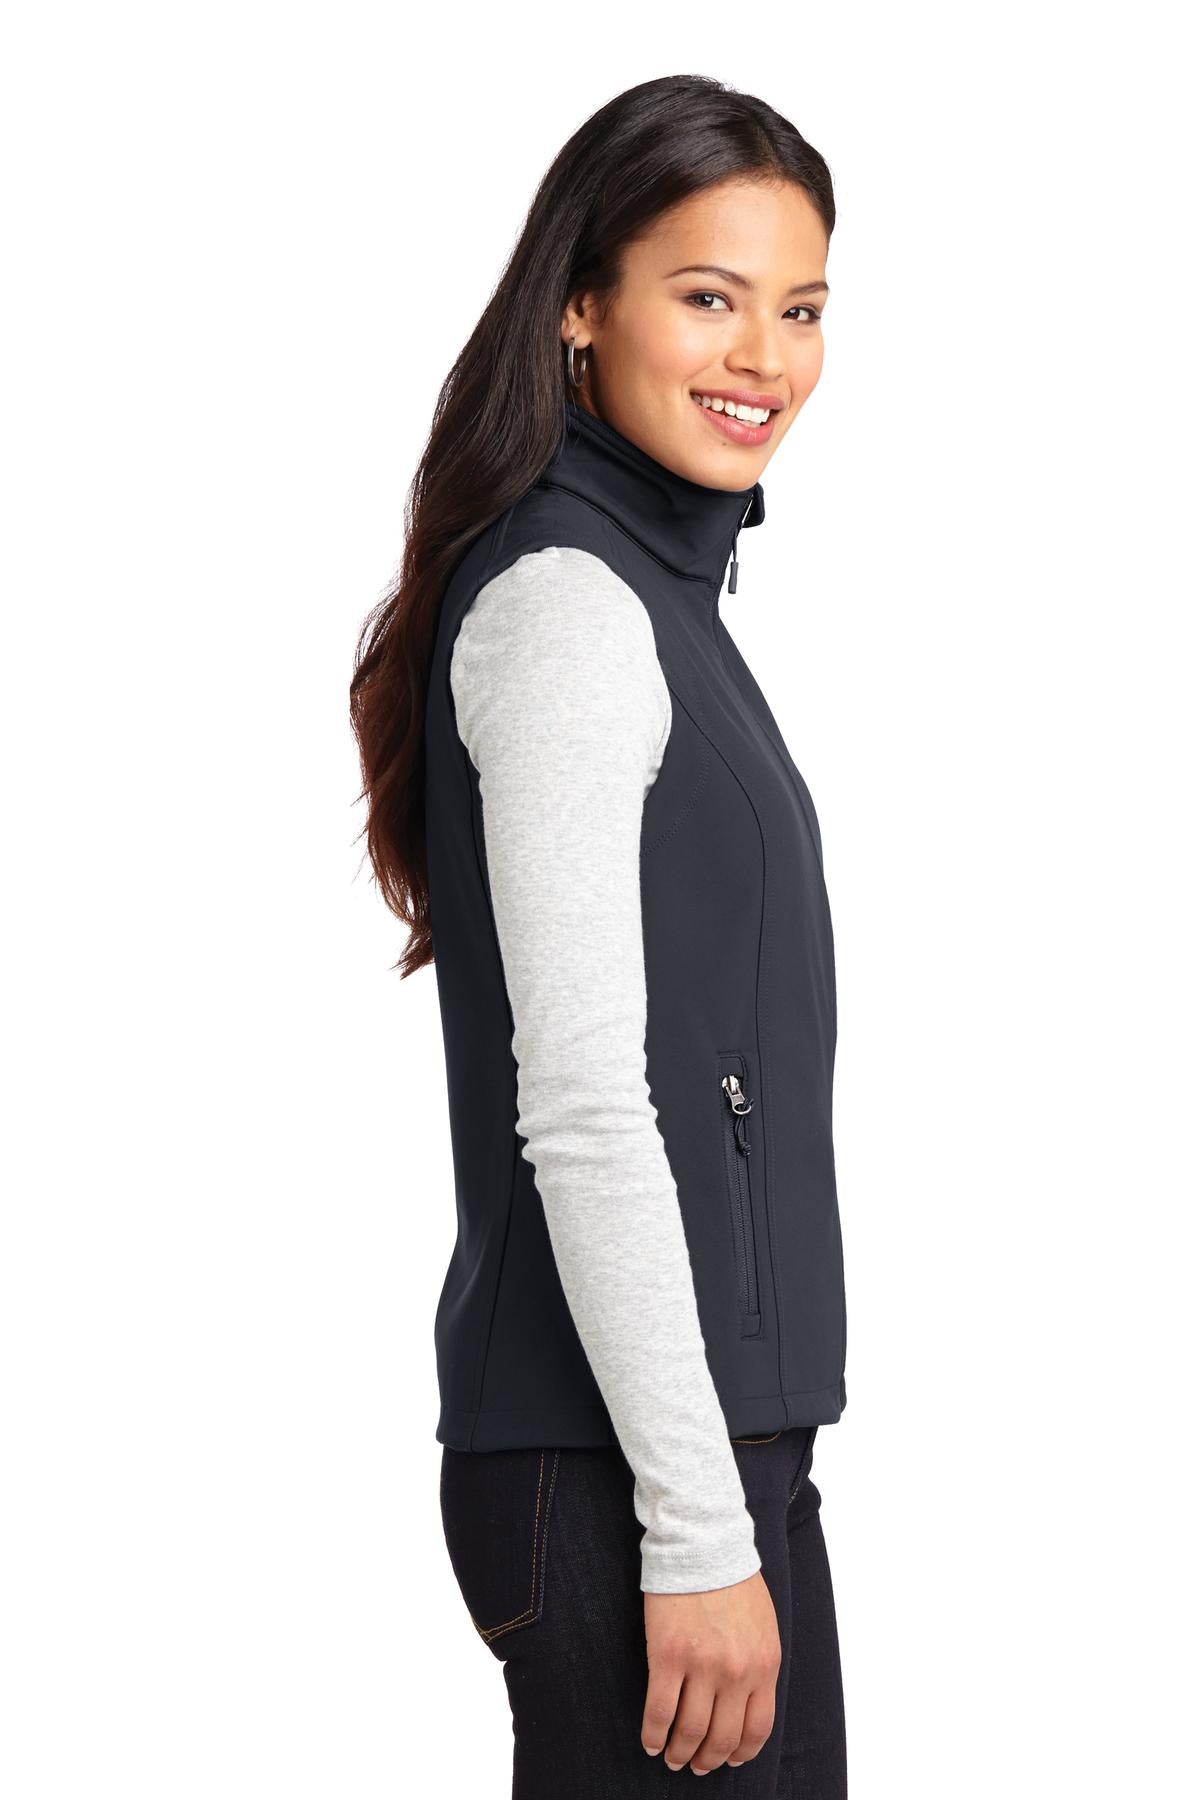 Port Authority® Ladies Core Soft Shell Vest. L325 - DFW Impression